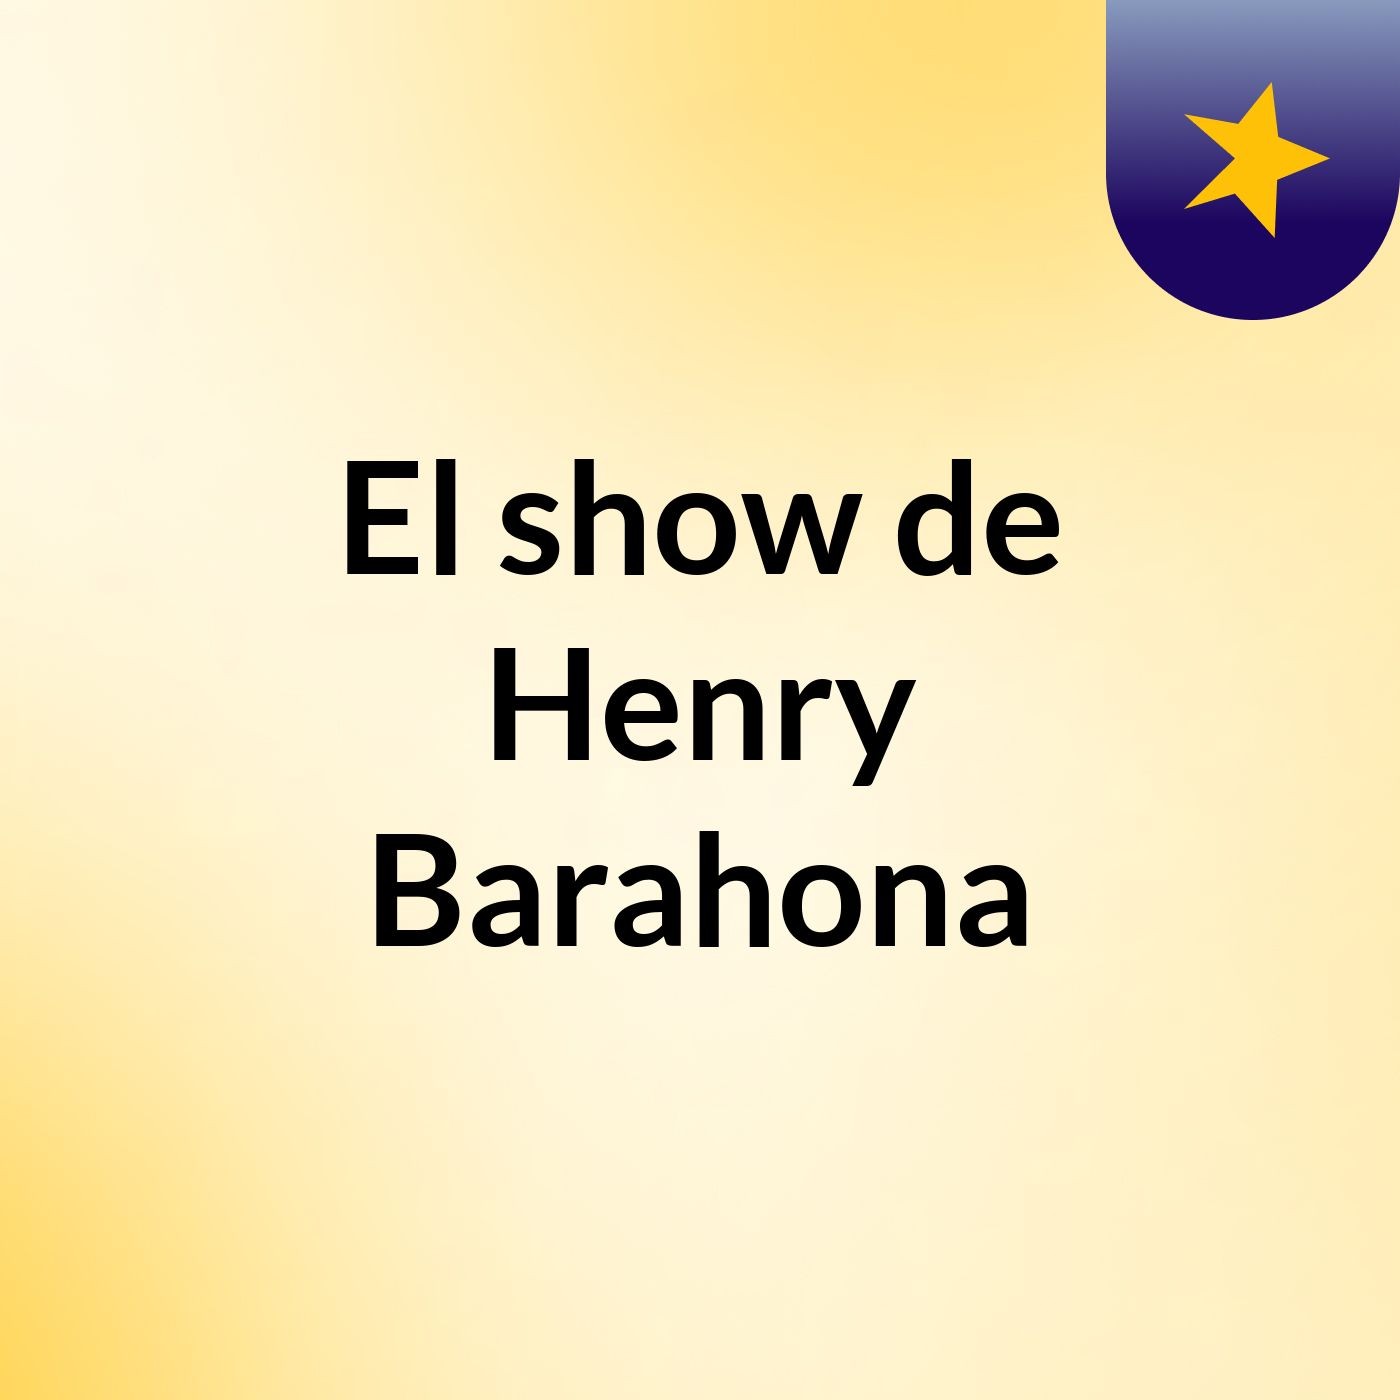 El show de Henry Barahona